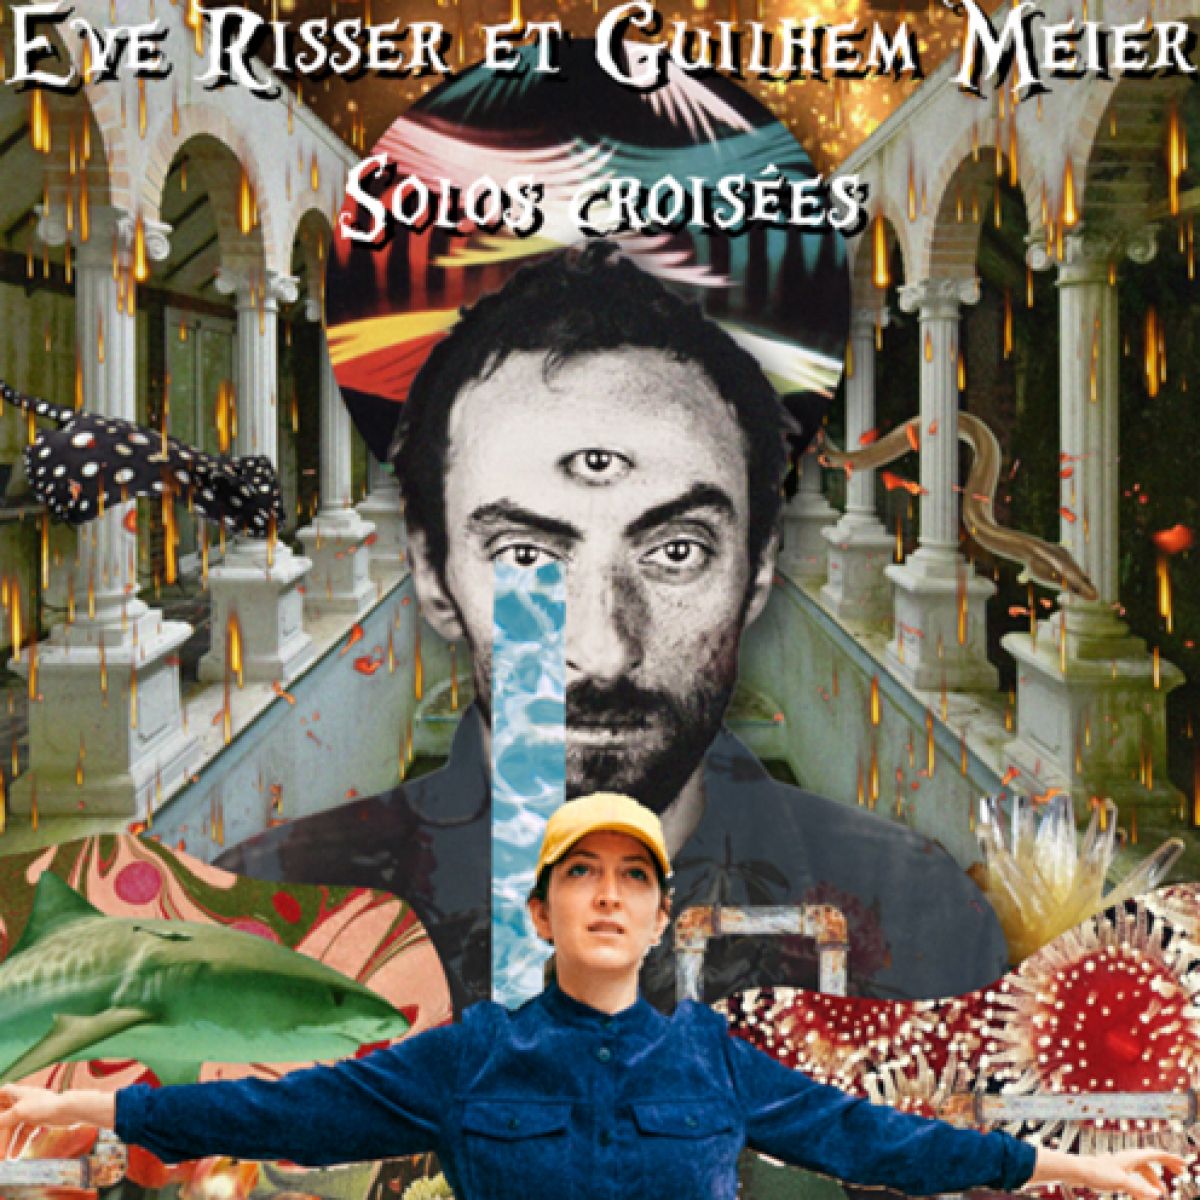 Guilhem Meier / Eve Risser - Solos croisés